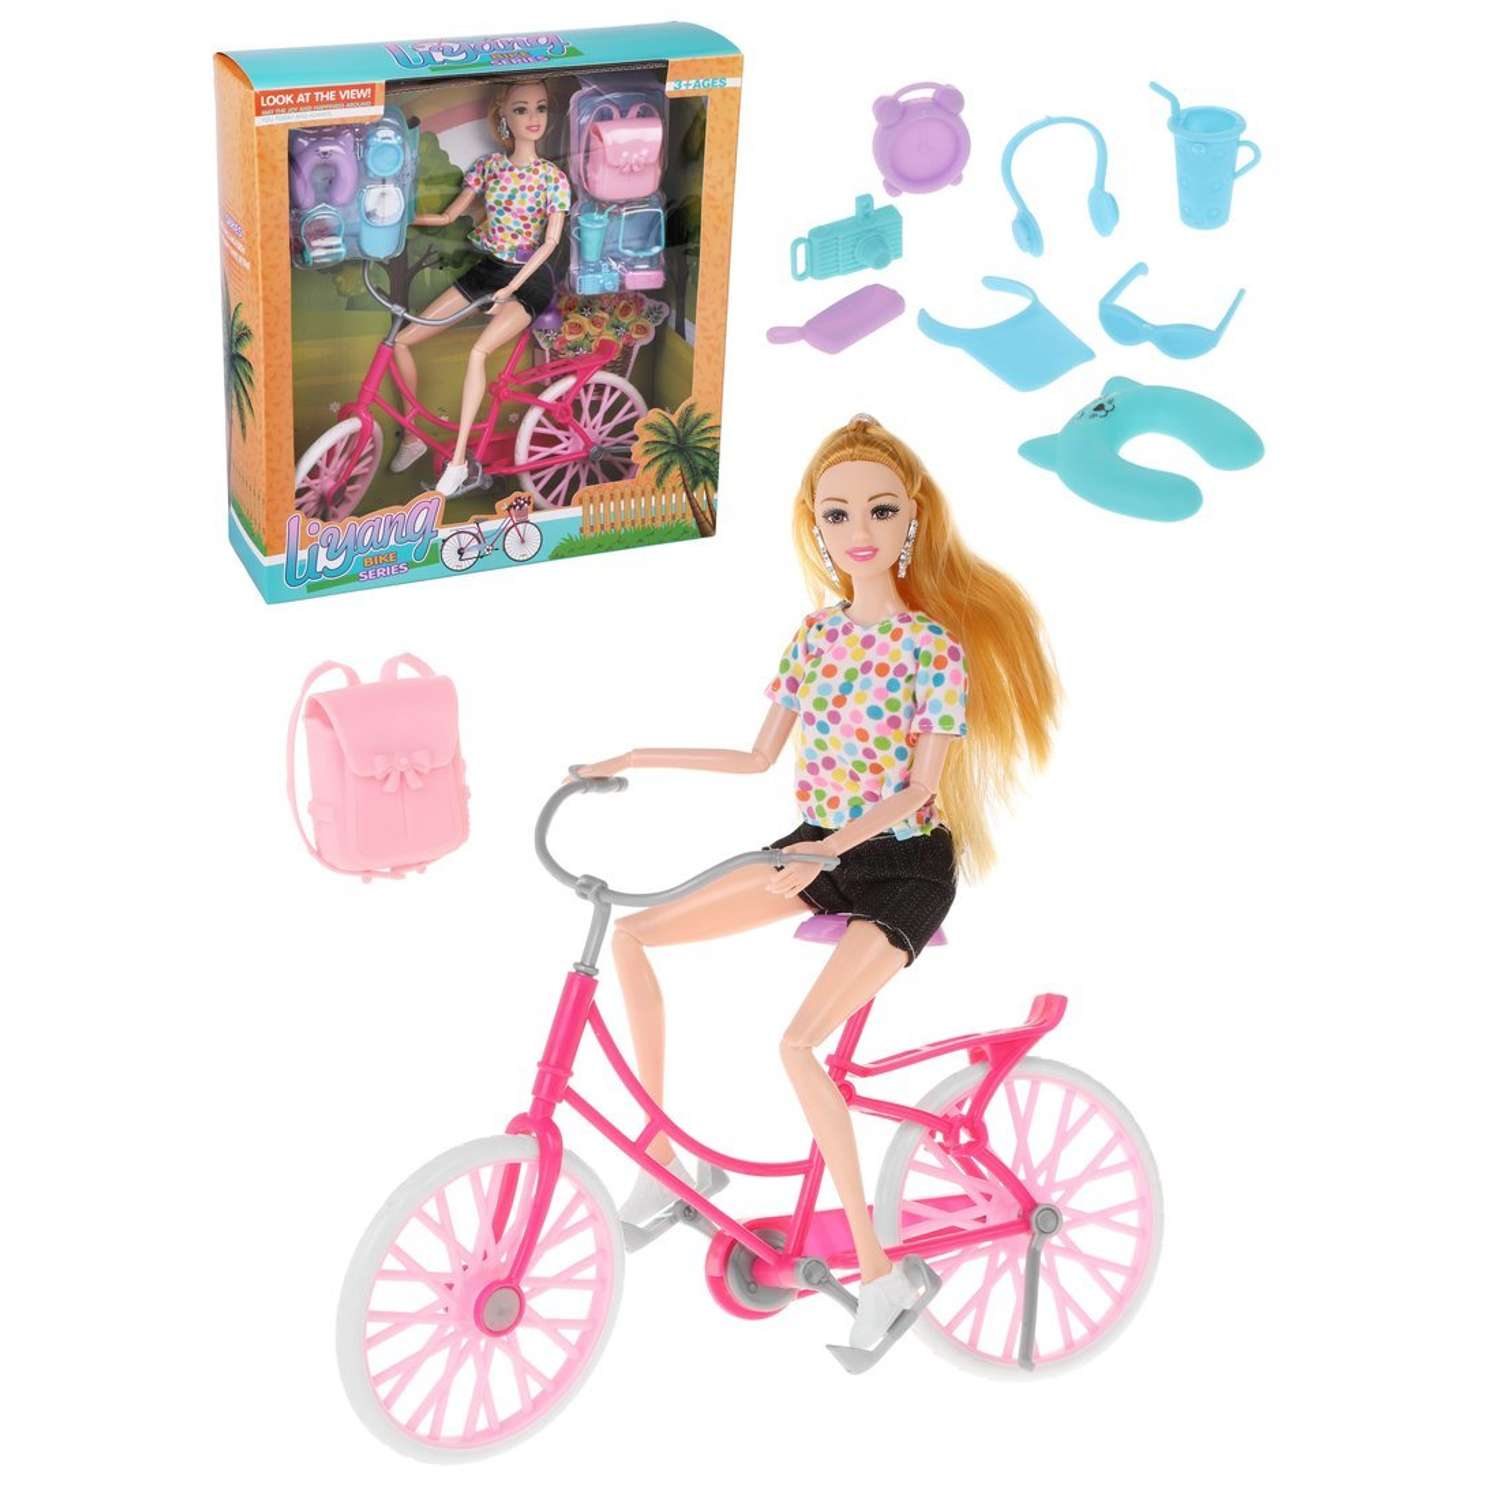 Кукла на велосипеде Наша Игрушка в комплекте 12 предметов для игры 801352 - фото 1